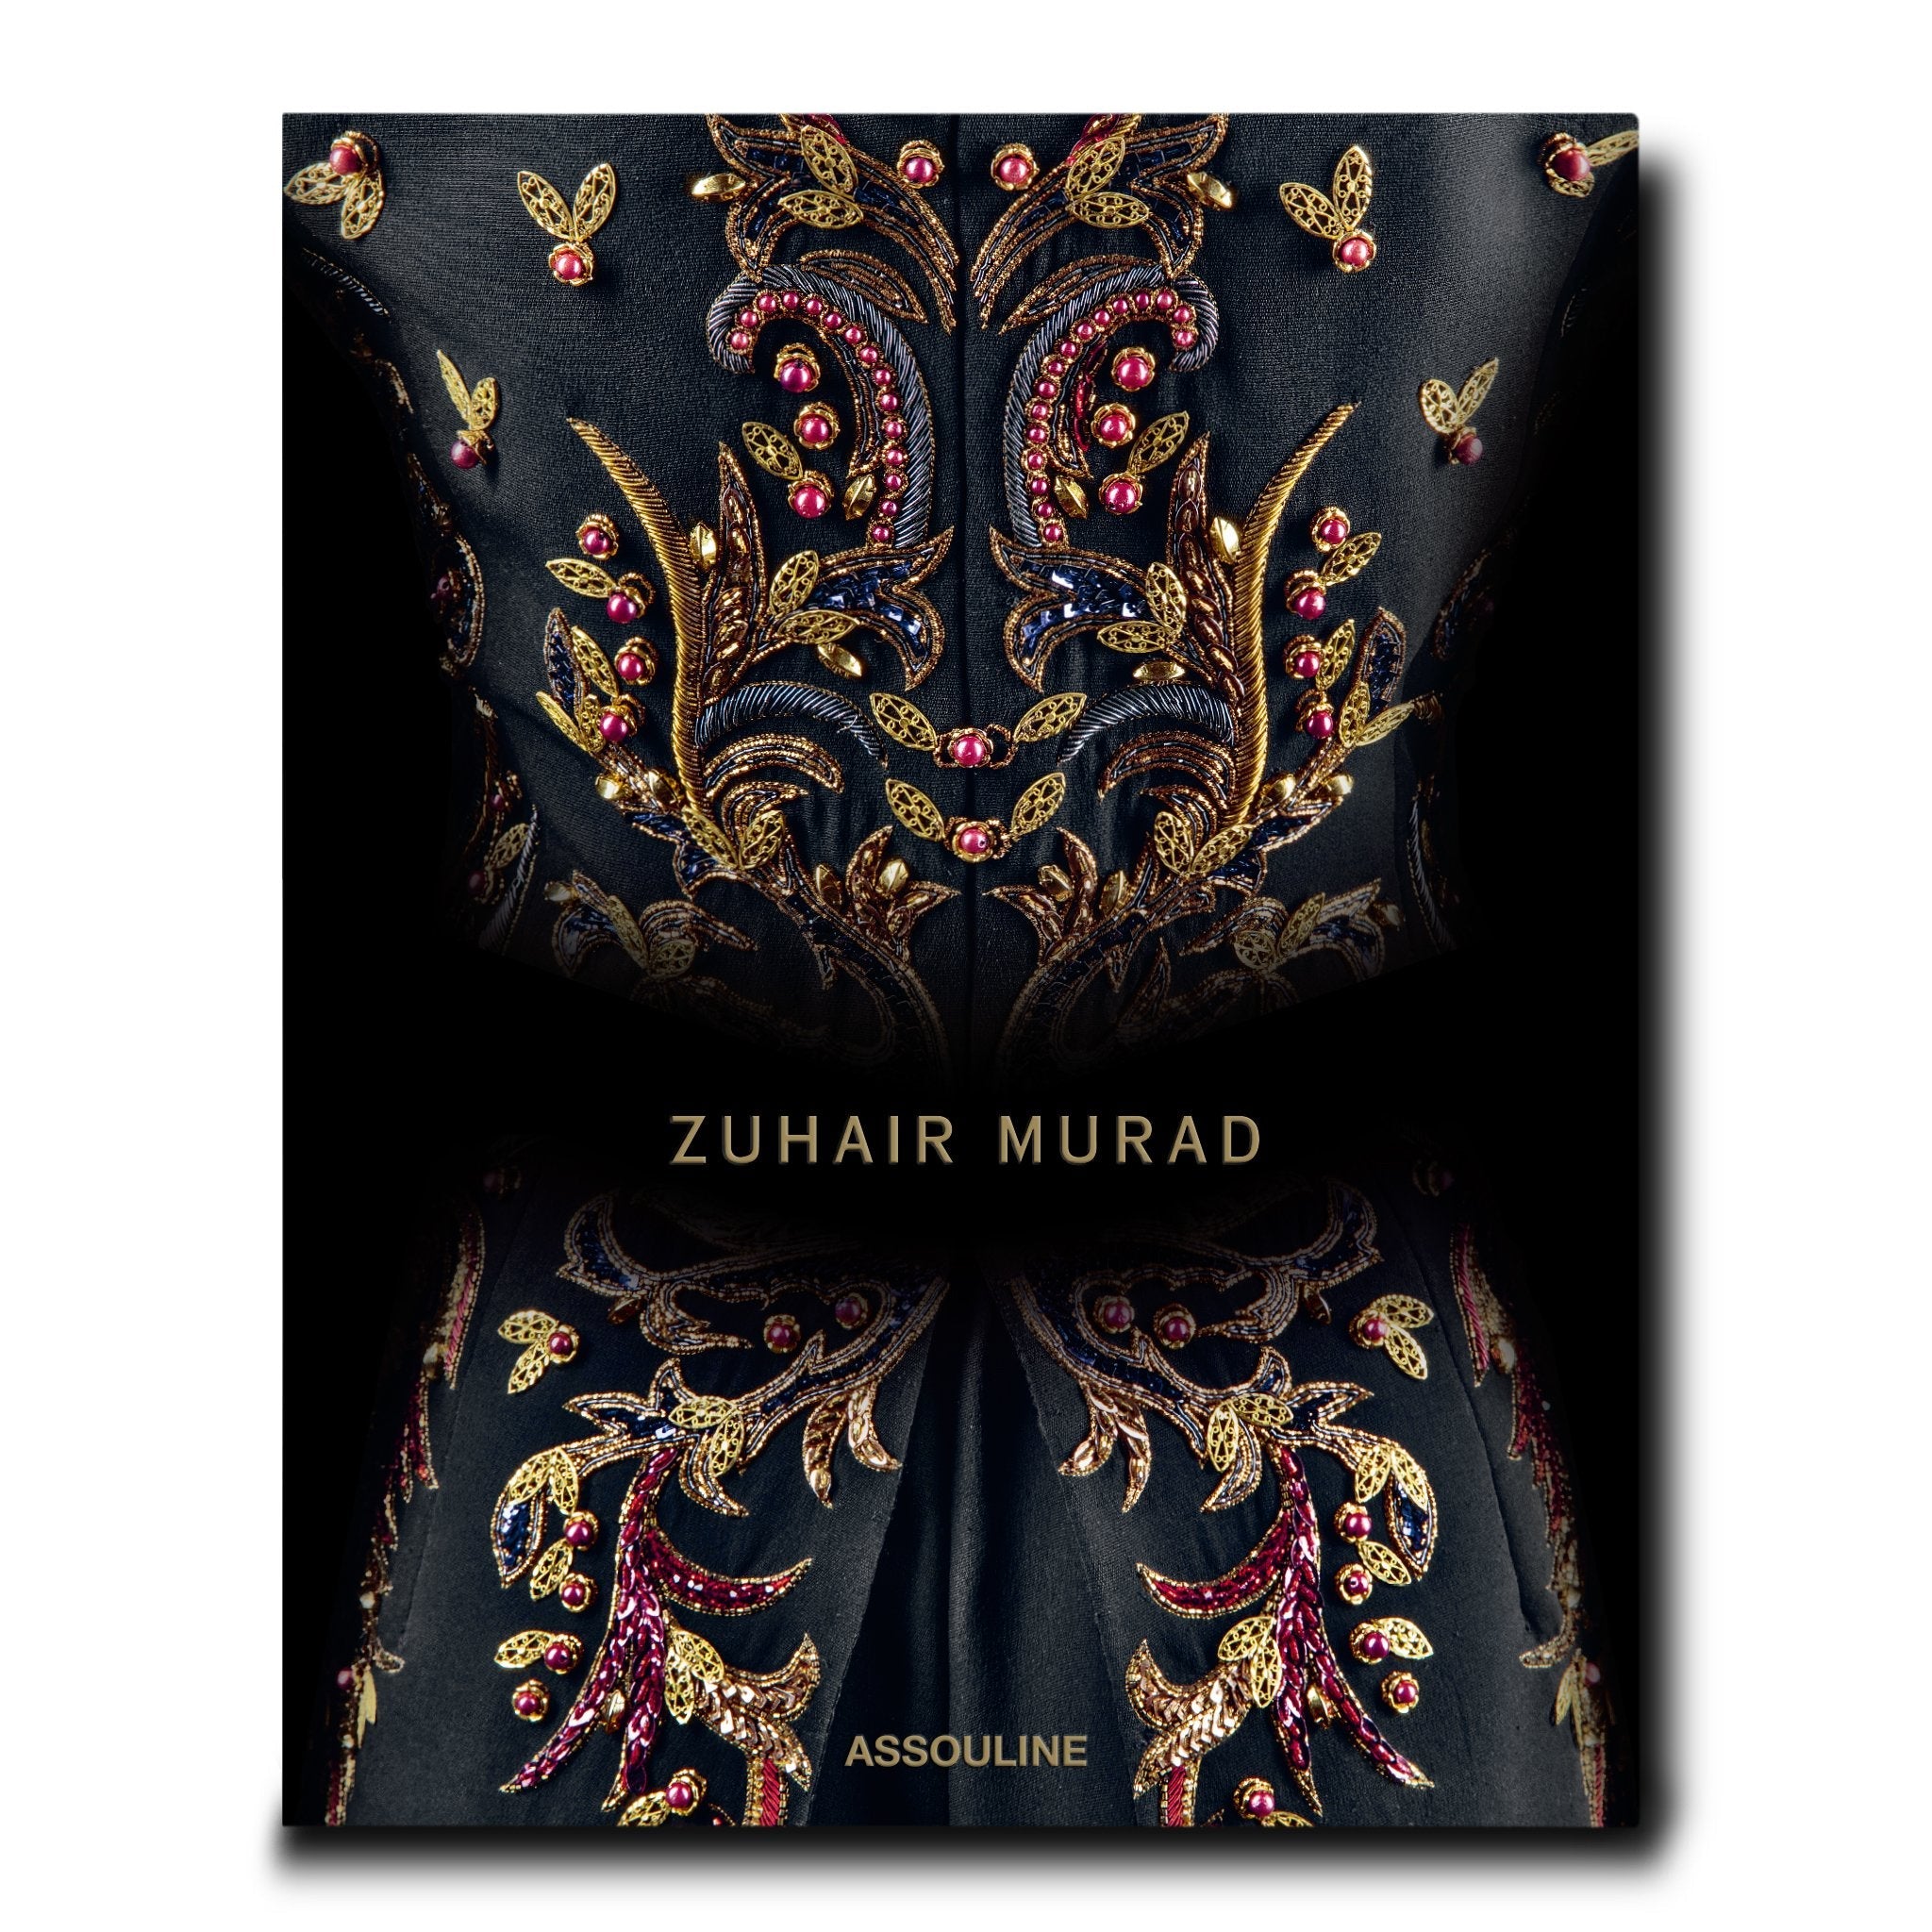 Zuhair Murad - Assouline Books – Lifelong Collectibles